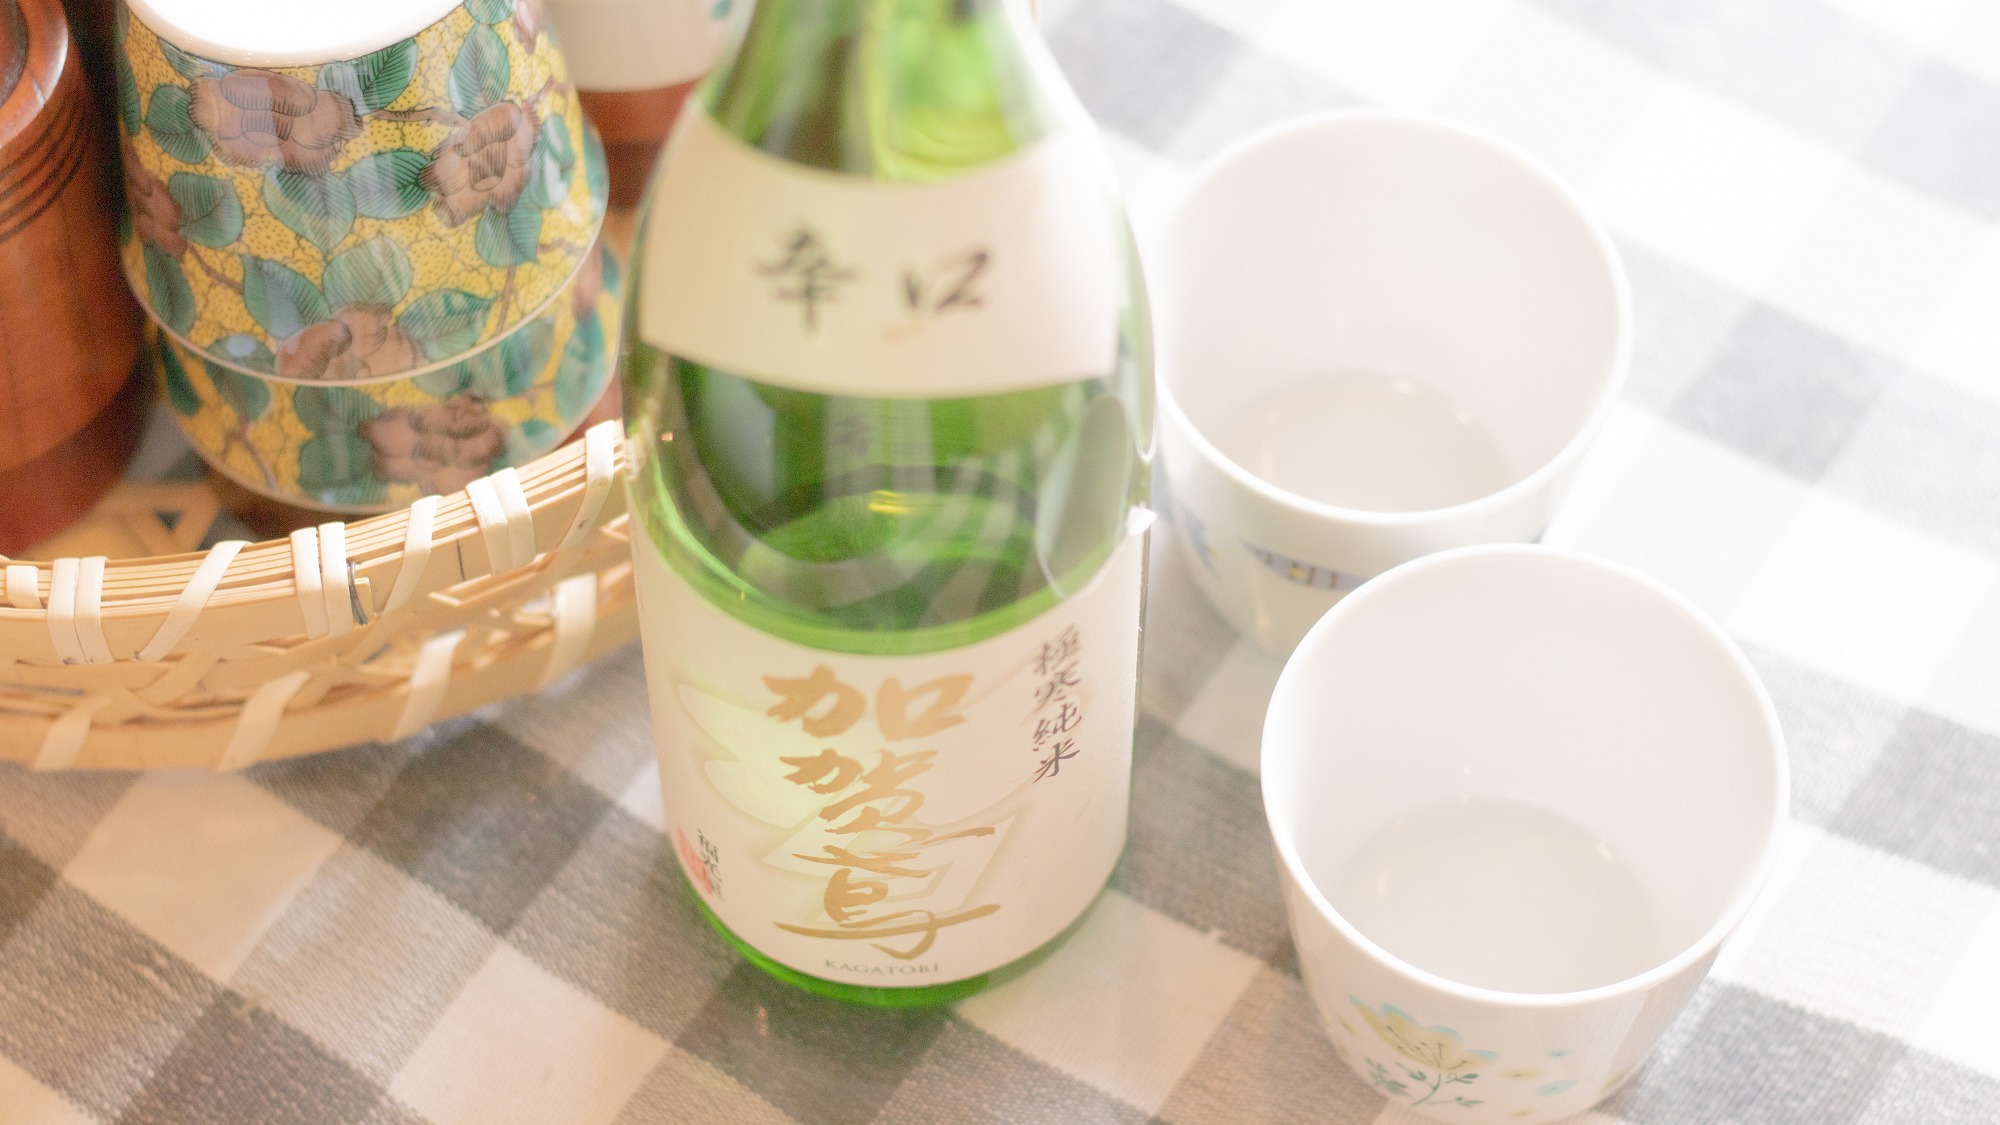 朝から美味しく嗜む金沢の「地酒」もお楽しみいただけます。